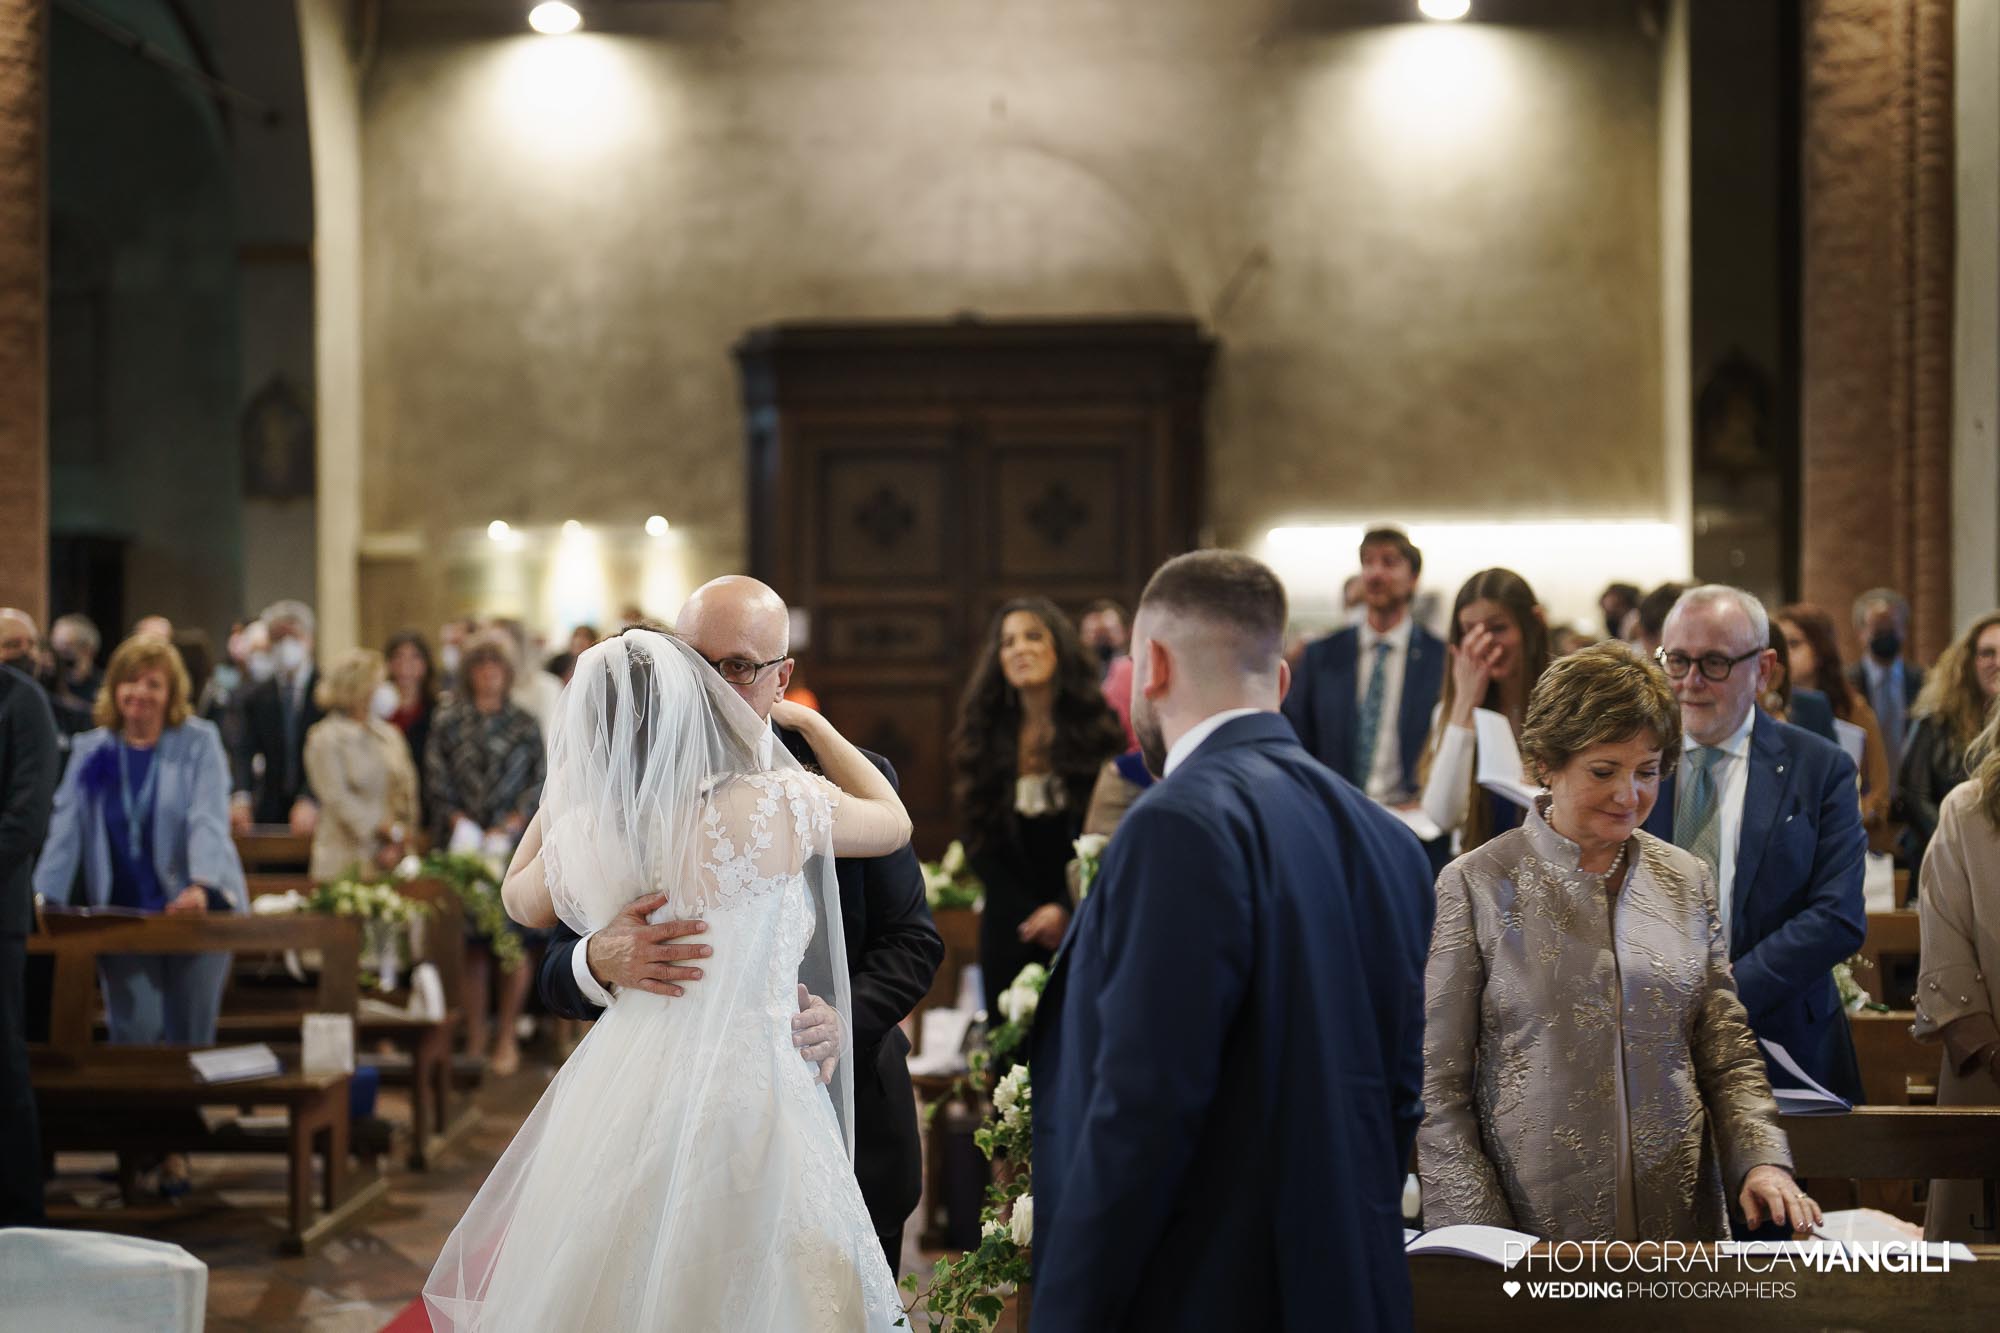 034 foto nozze wedding reportage sposi rito religioso pace chiesa milano chiara oliviero